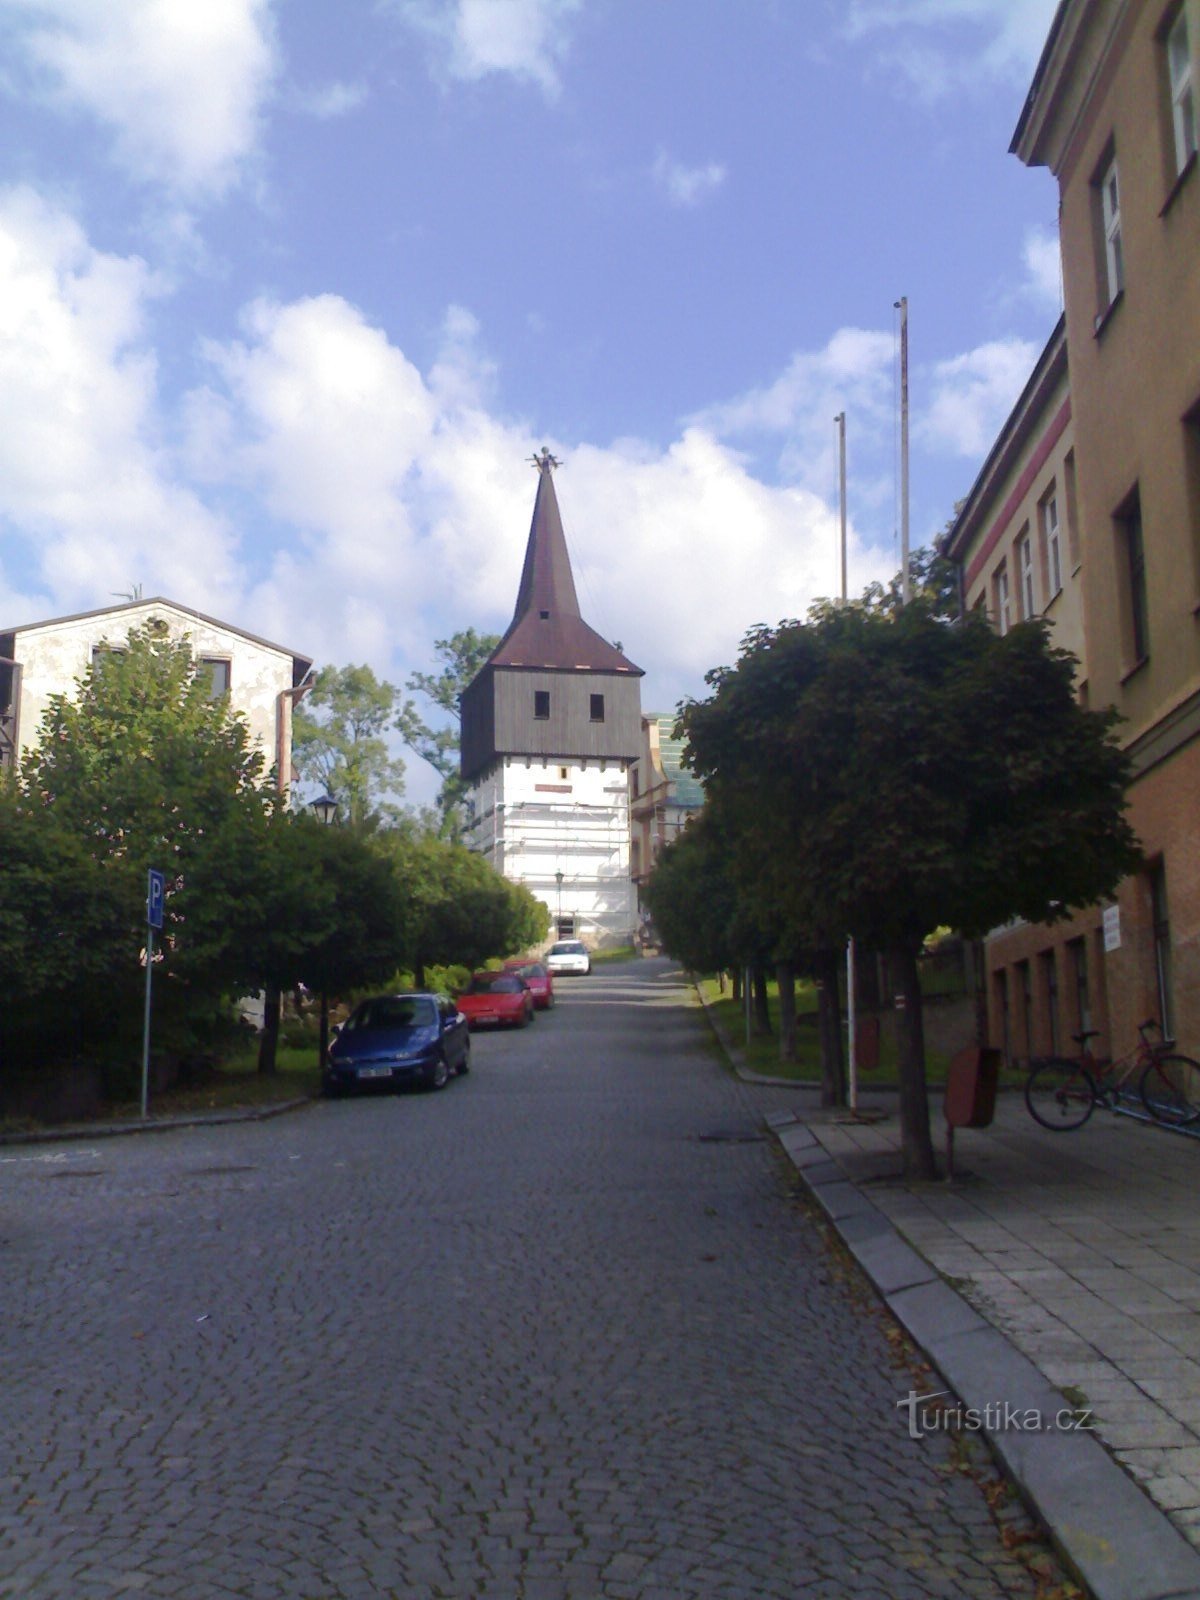 赫罗诺夫 - 圣徒教堂